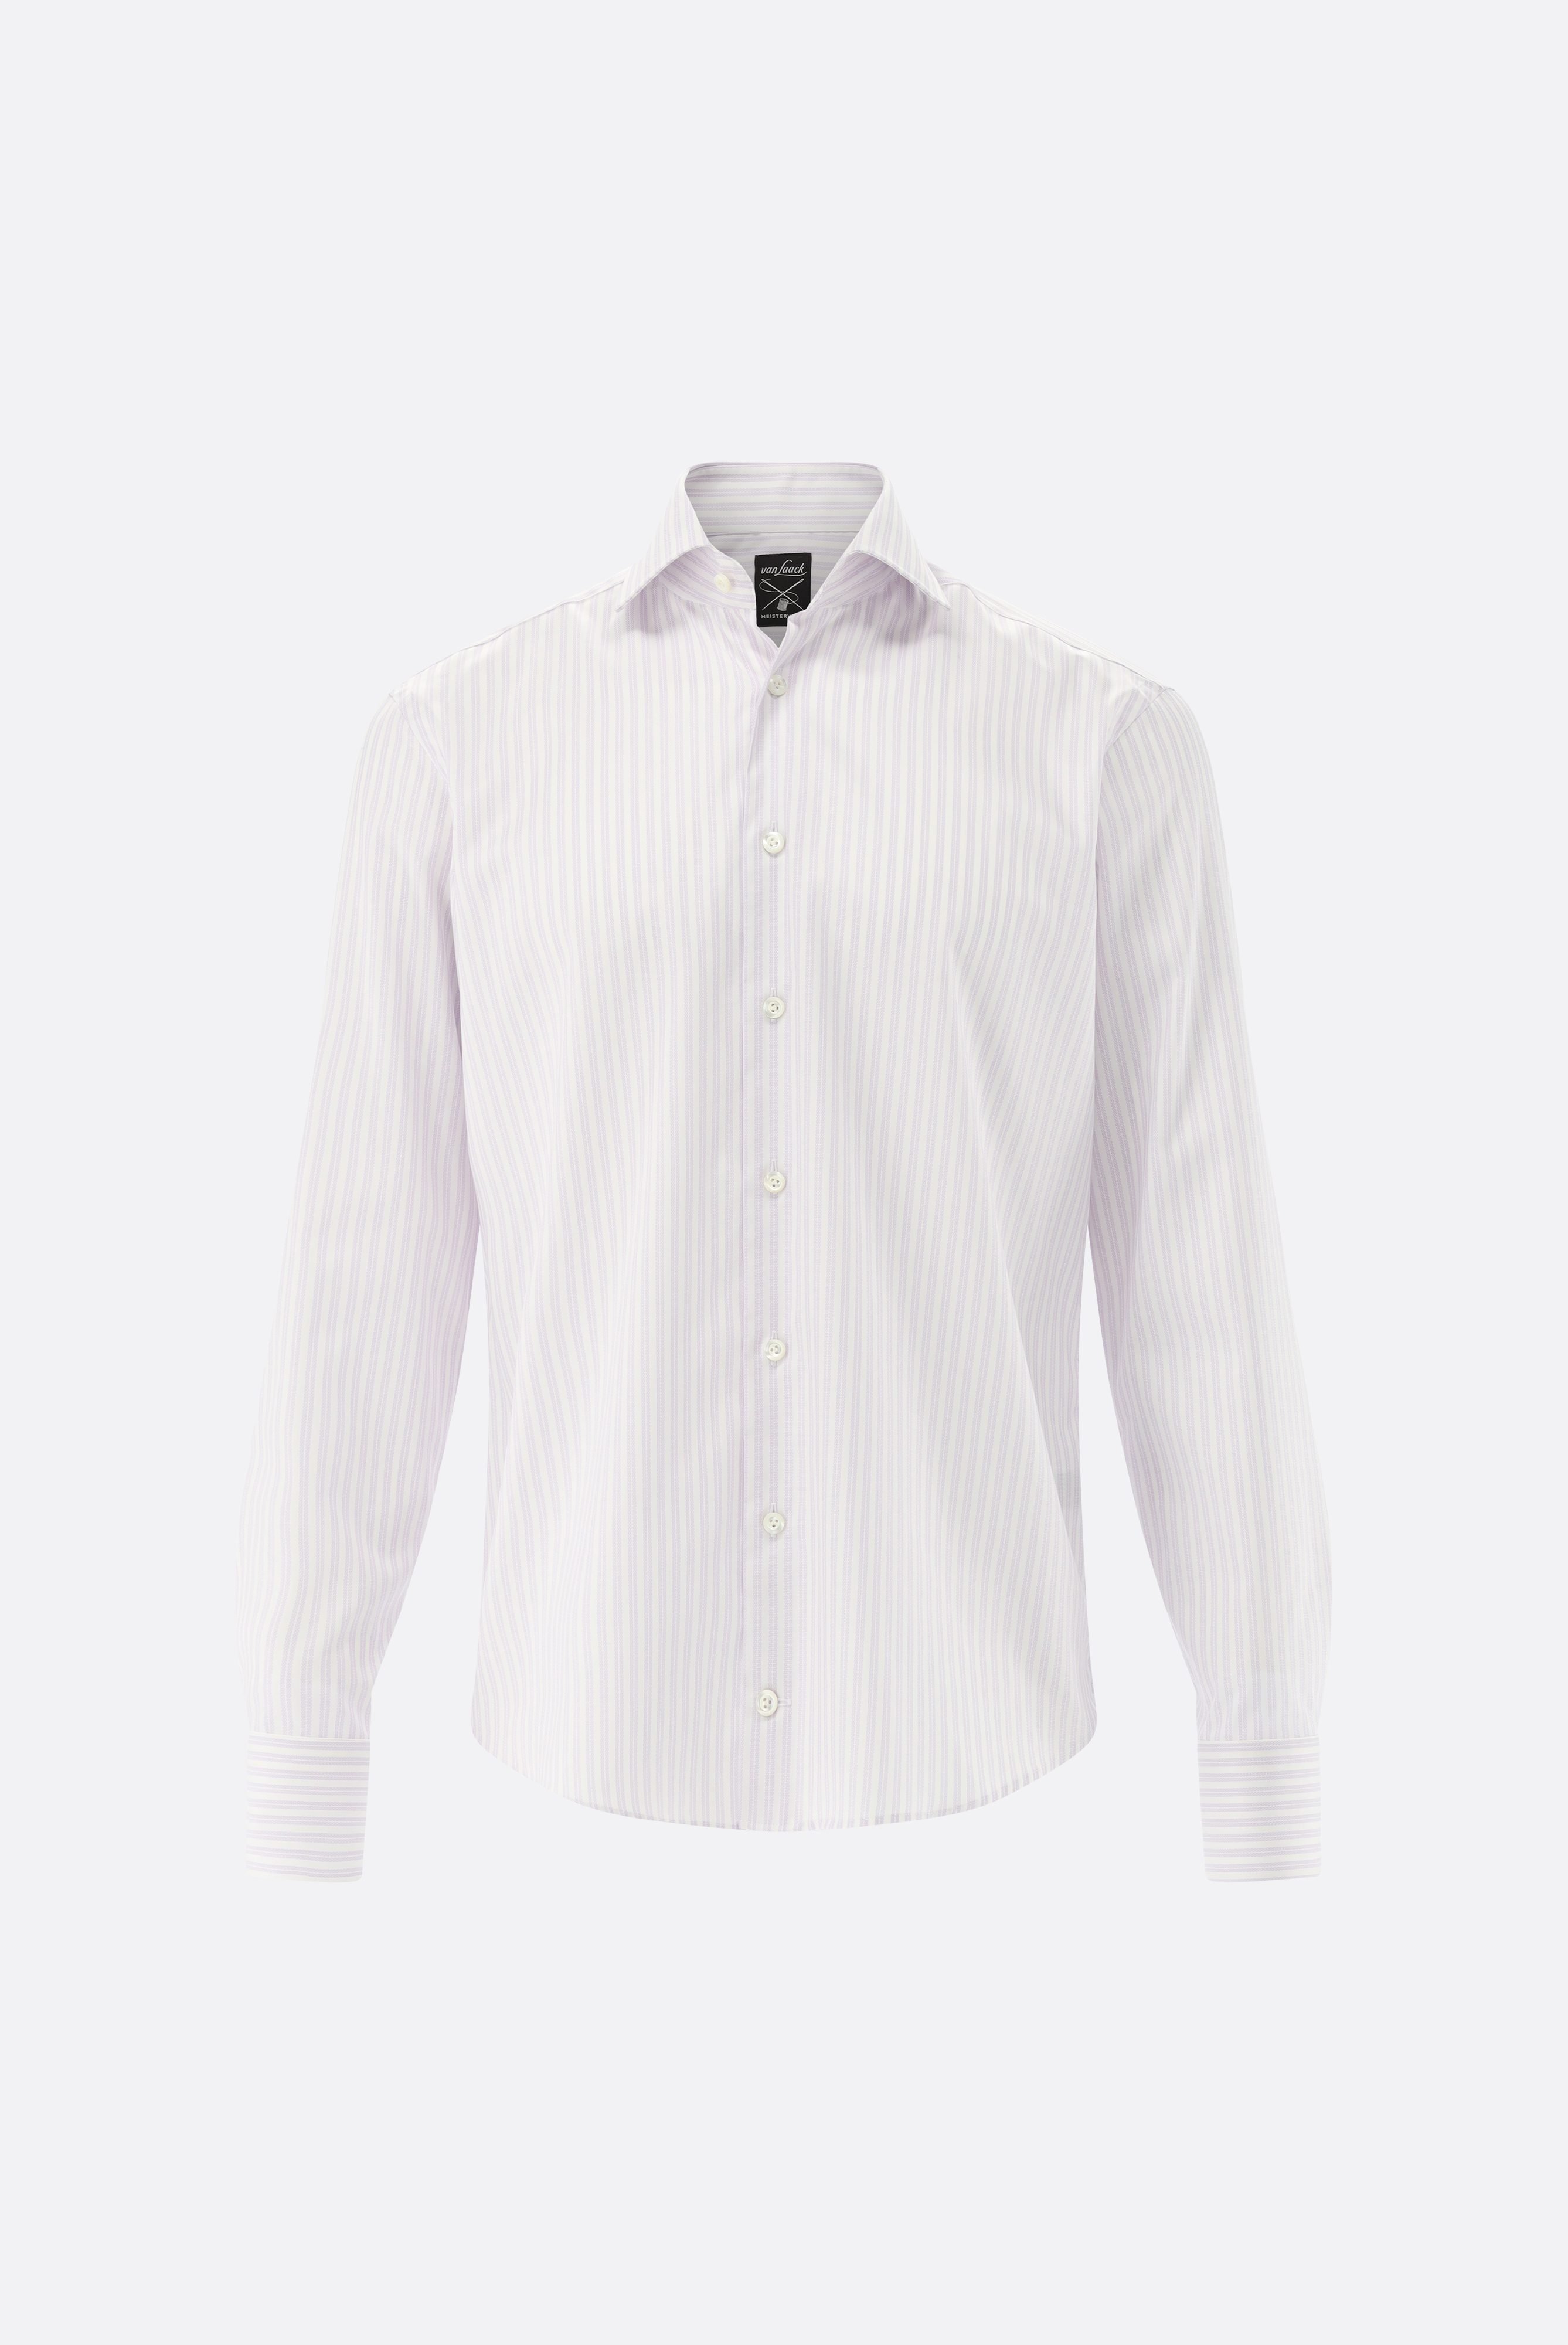 Bügelleichte Hemden+Bügelfreies Hemd mit Streifen Tailor Fit+20.2020.BQ.161106.006.38